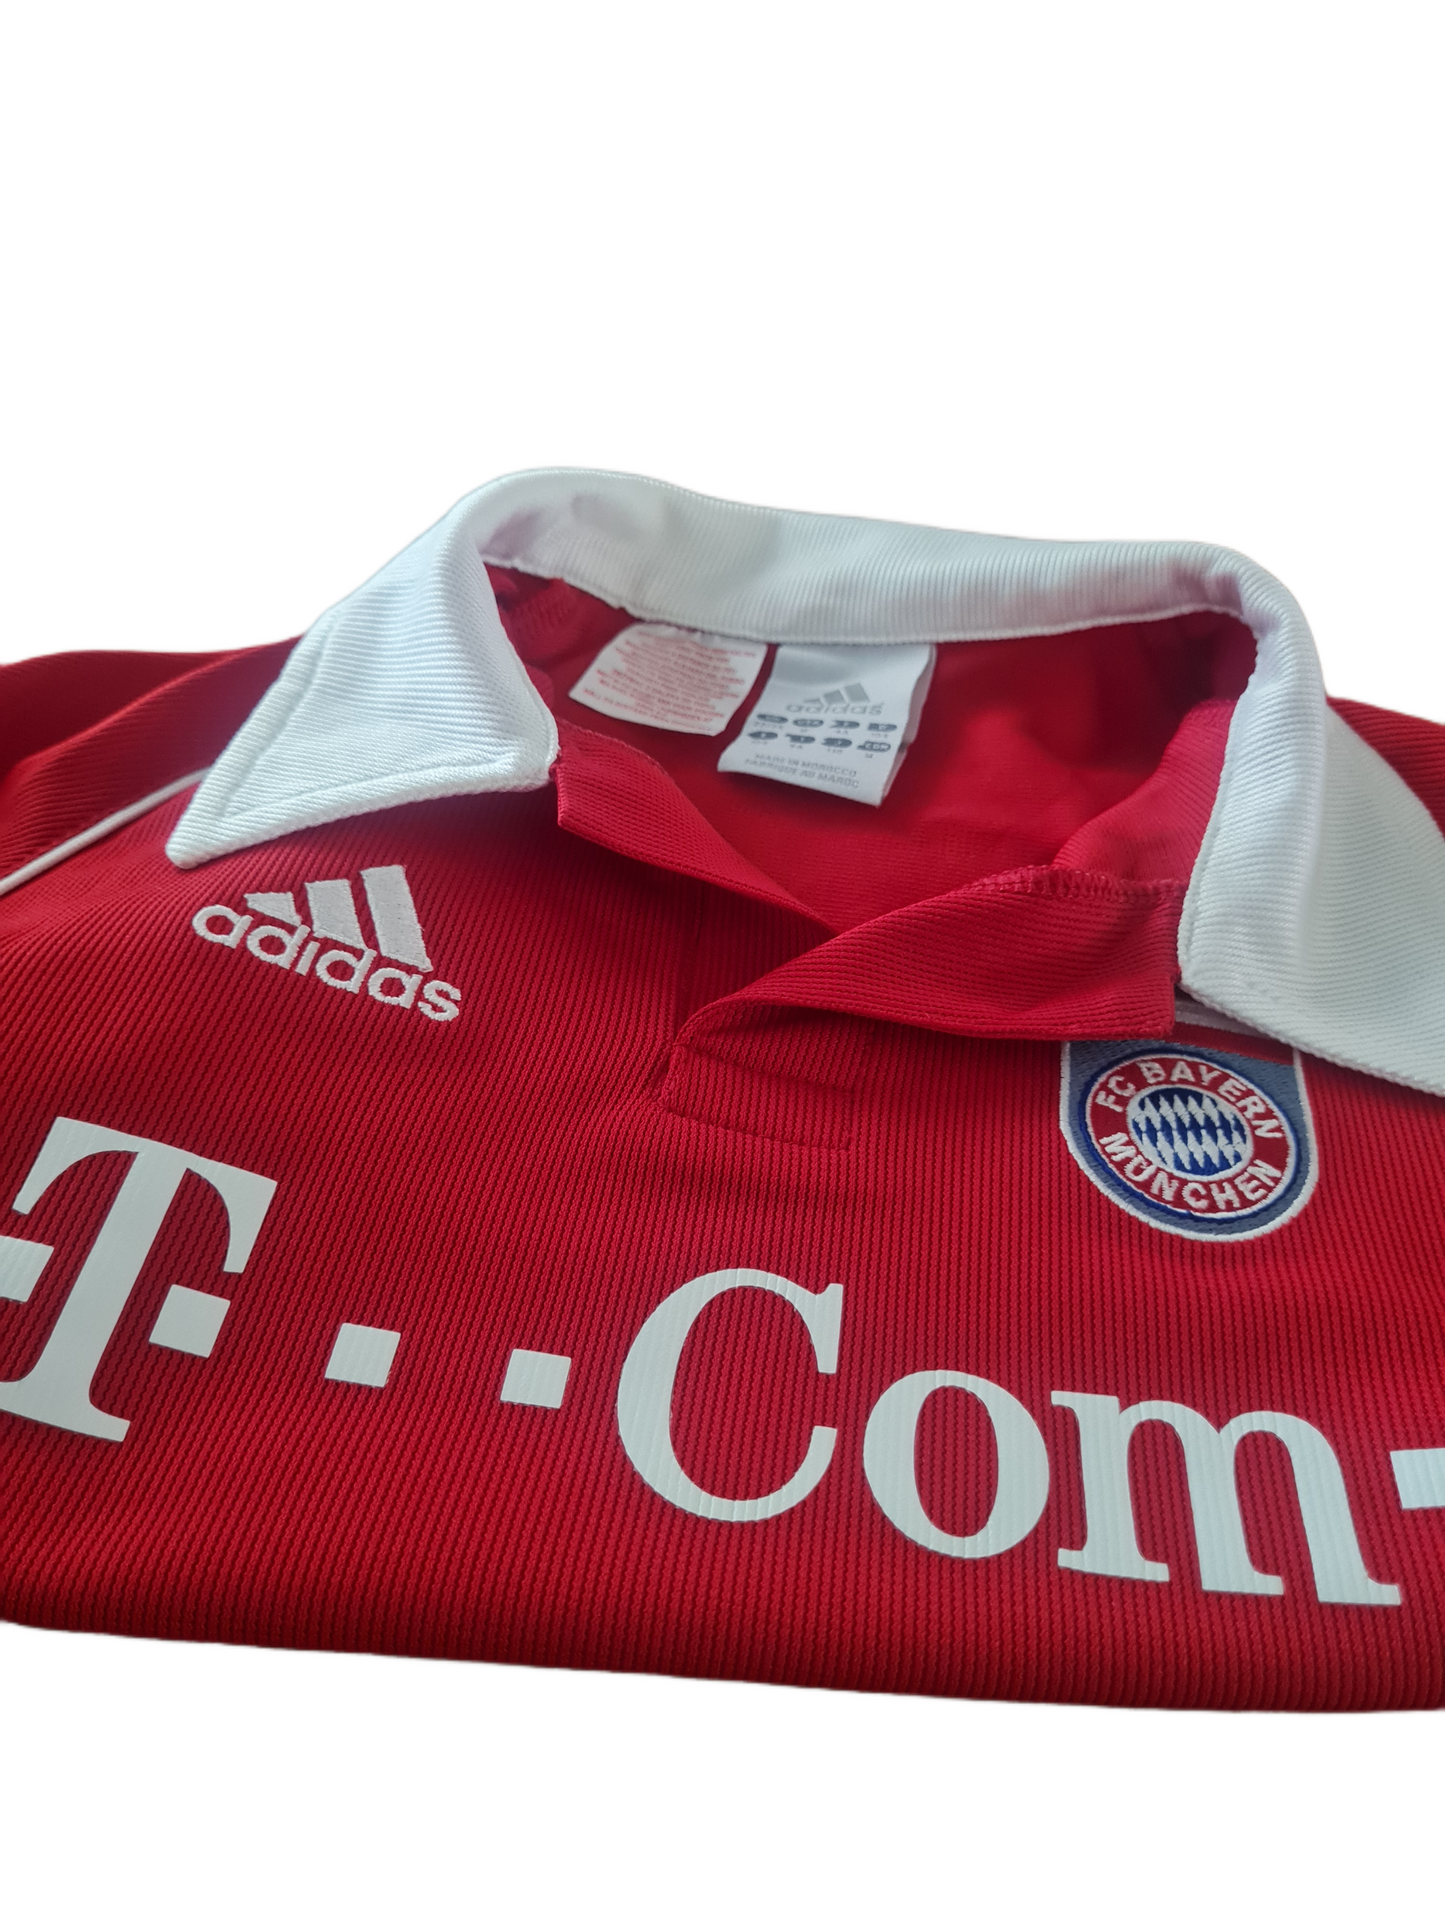 Bayern Munich Supporters Shirt